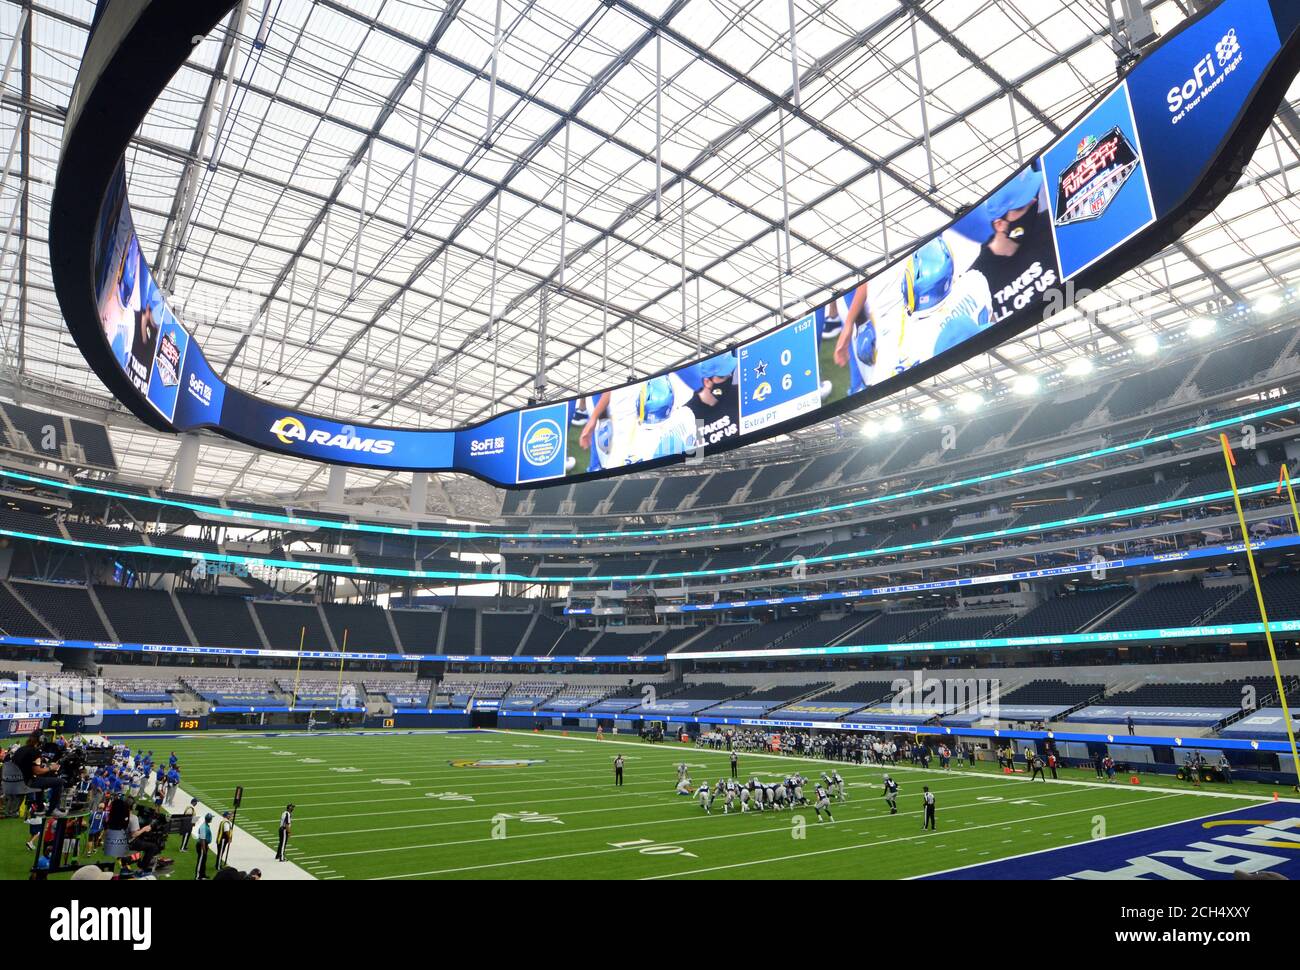 Inglewood, Stati Uniti. 13 Settembre 2020. I Los Angeles Rams giocano contro i Dallas Cowboys al SoFi Stadium di Inglewood, California, domenica 13 settembre 2020. Foto di Lori Shepler/UPI Credit: UPI/Alamy Live News Foto Stock